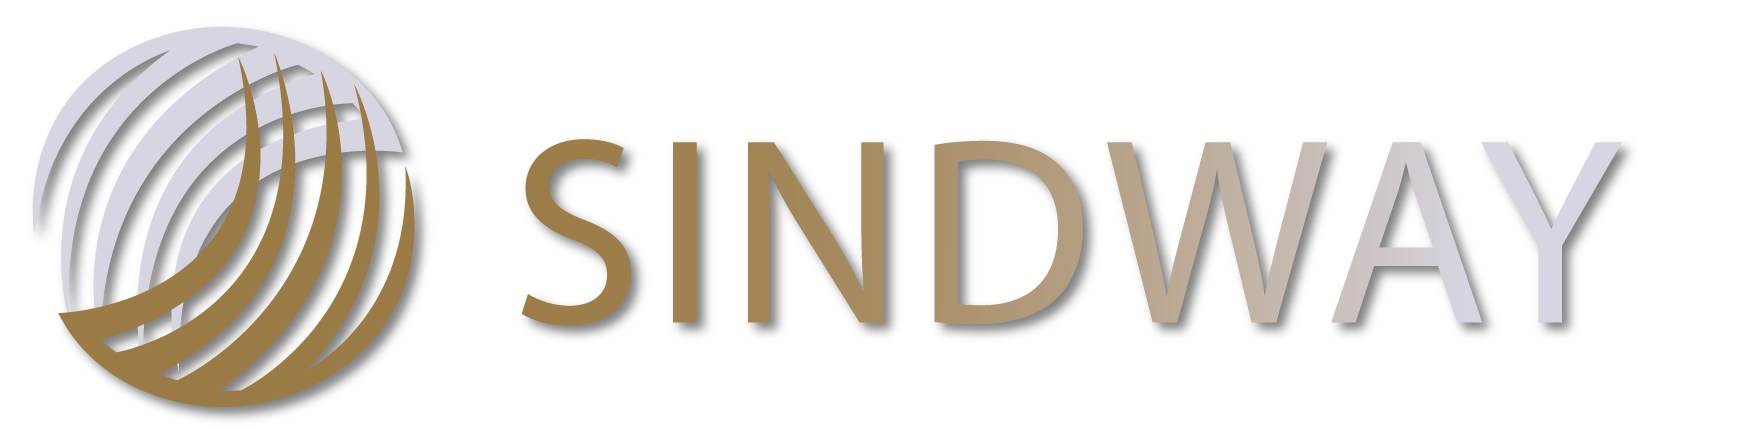 Sindway Logo